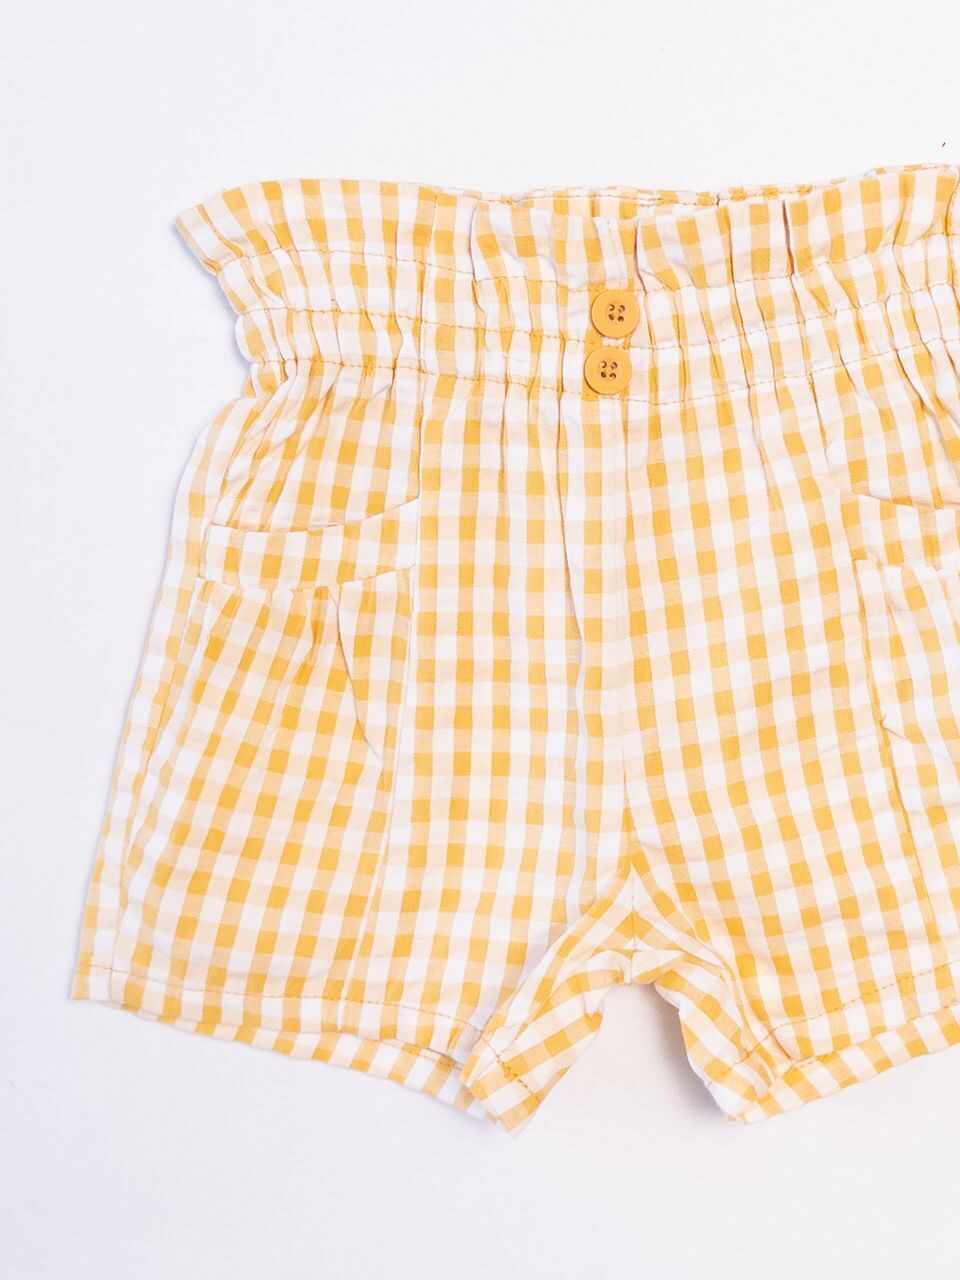 Шорты хлопковые для девочки с карманами  цвет желтый/белый/клетка  рост 74 см Primark